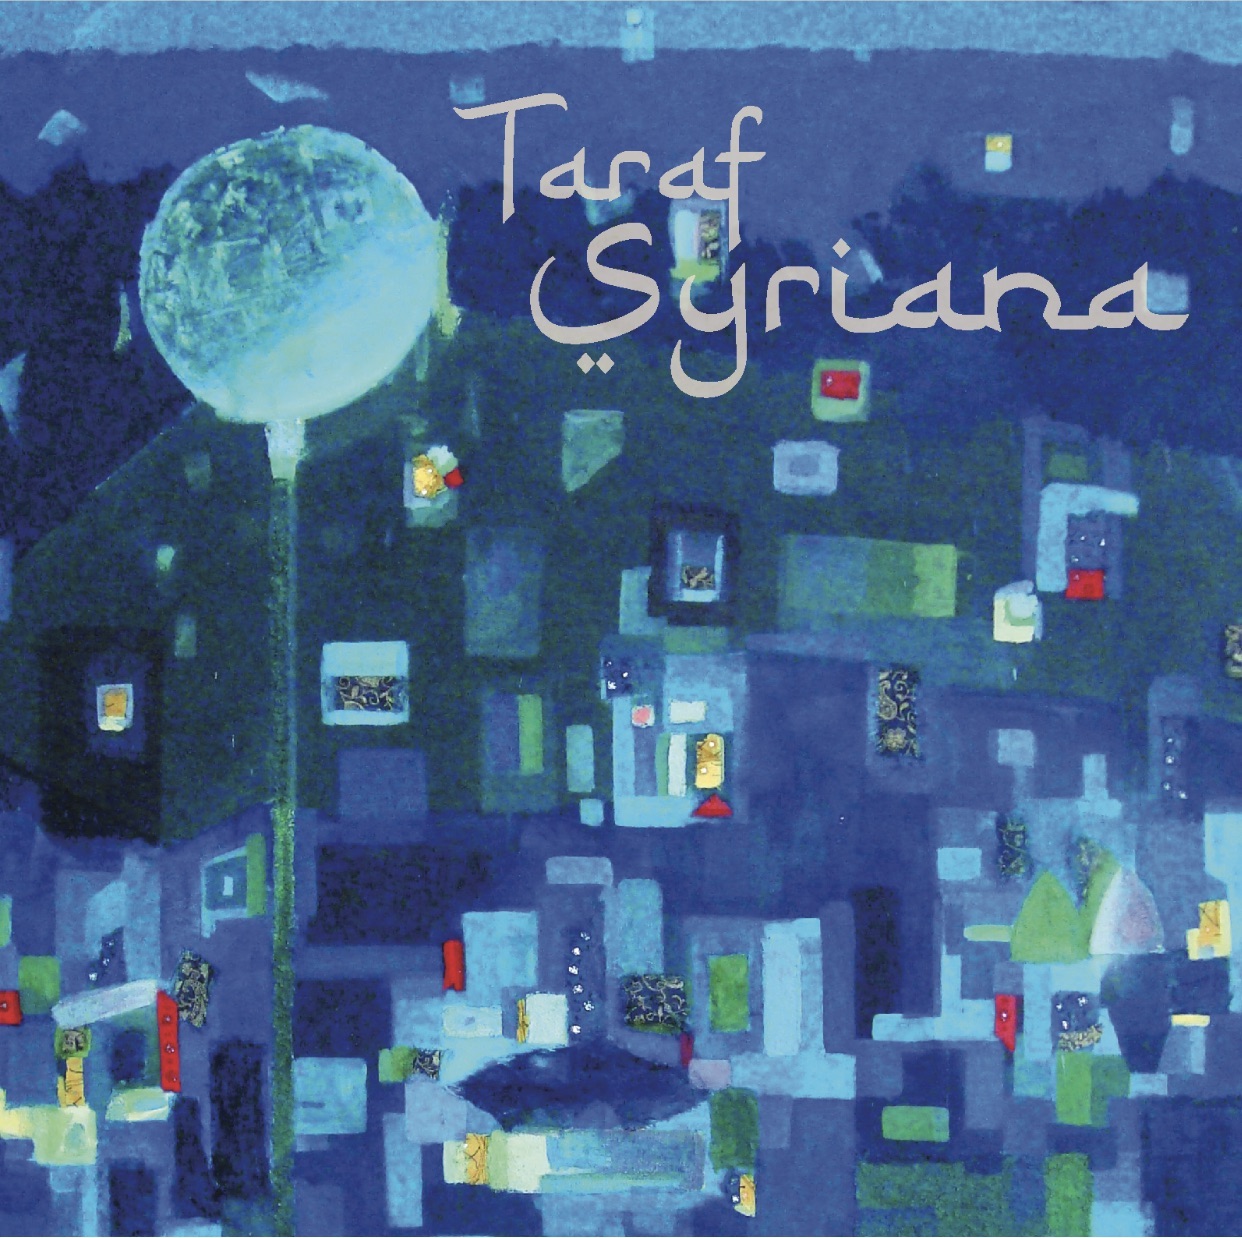 غلاف ألبوم فرقة "ترف سيريانا" السورية الغجرية. Cover of Taraf Syriana's "Taraf Syriana" (source: www.tarafsyriana.com/)